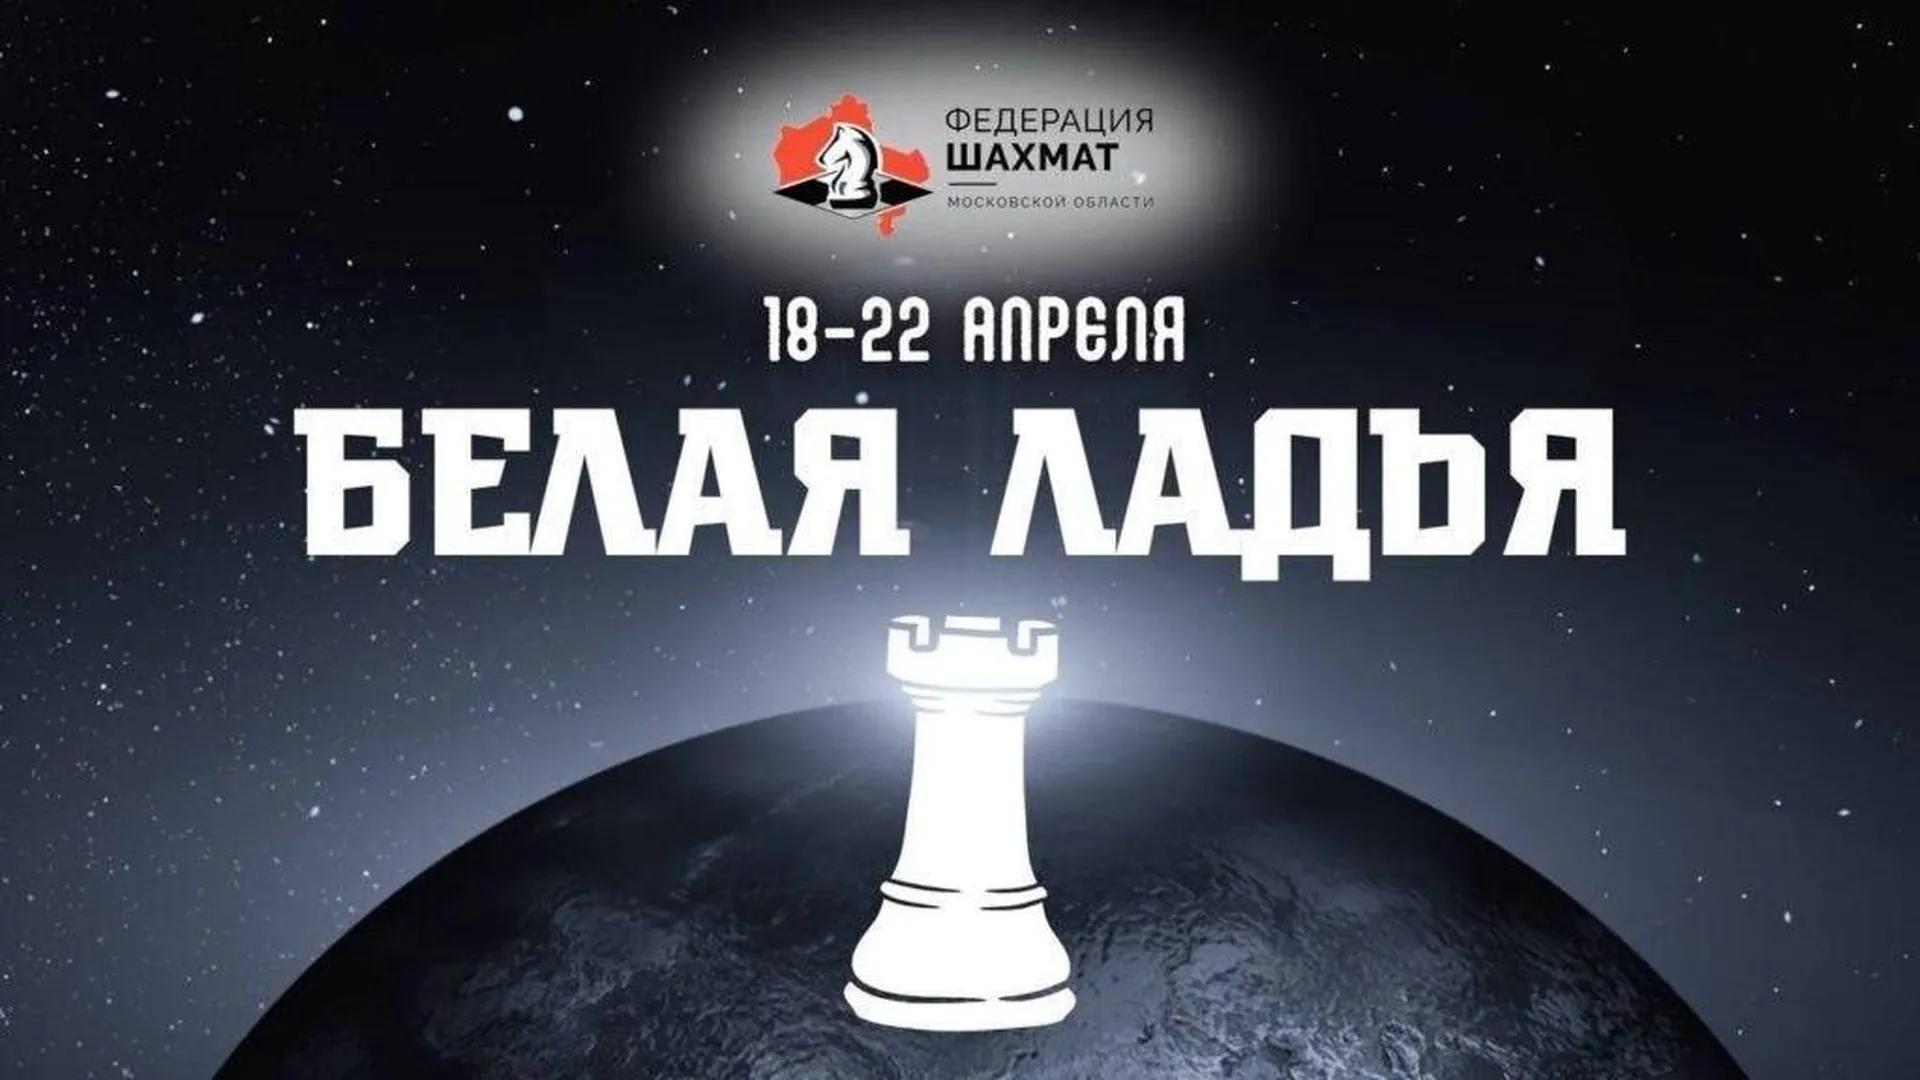 Финал соревнований по шахматам «Белая ладья» пройдет в Королеве